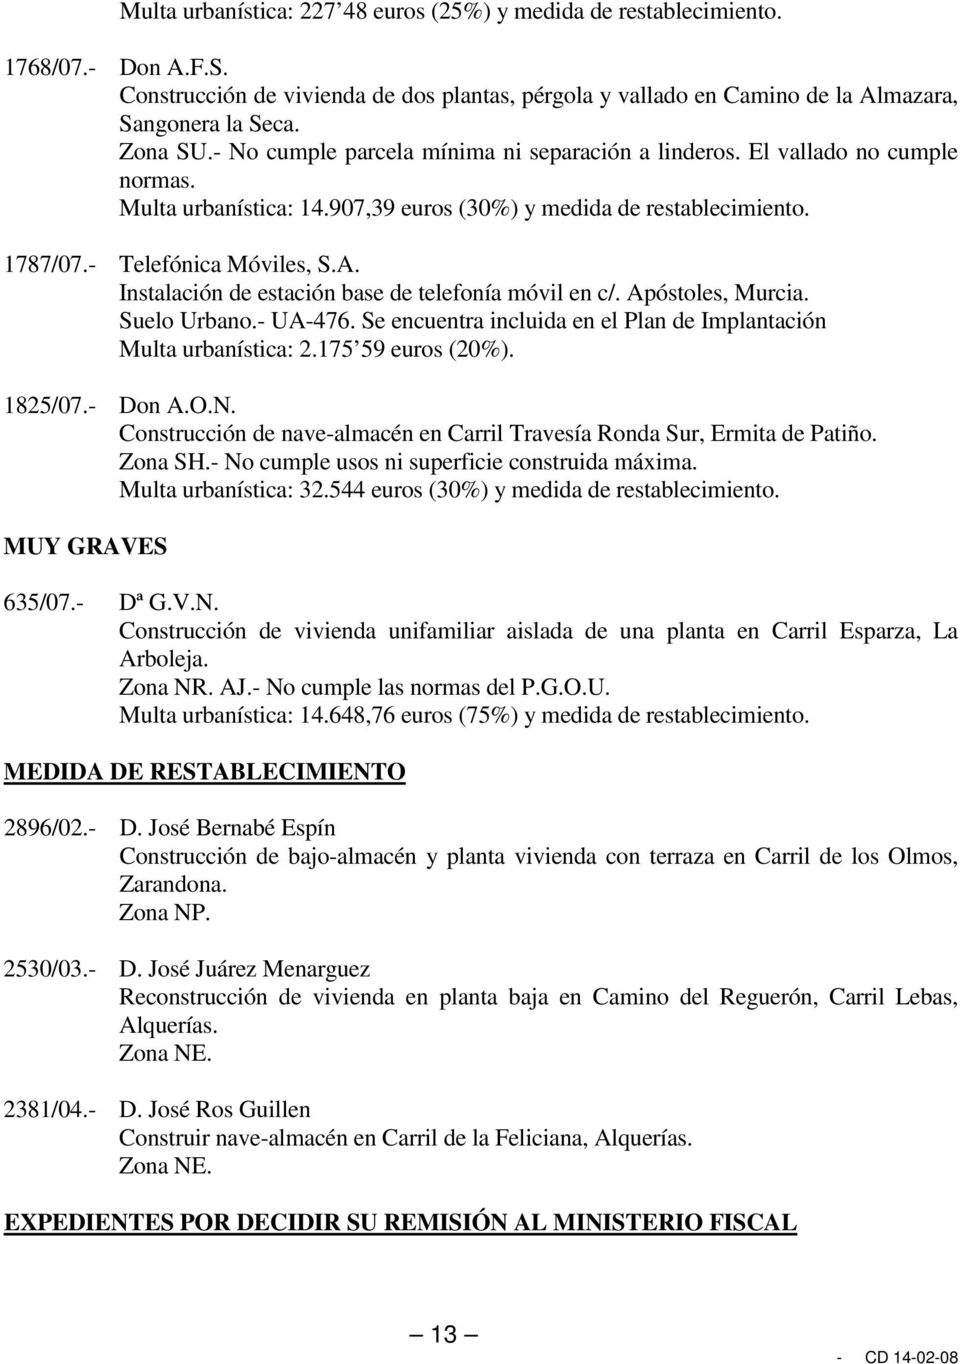 Instalación de estación base de telefonía móvil en c/. Apóstoles, Murcia. Suelo Urbano.- UA-476. Se encuentra incluida en el Plan de Implantación Multa urbanística: 2.175 59 euros (20%). 1825/07.